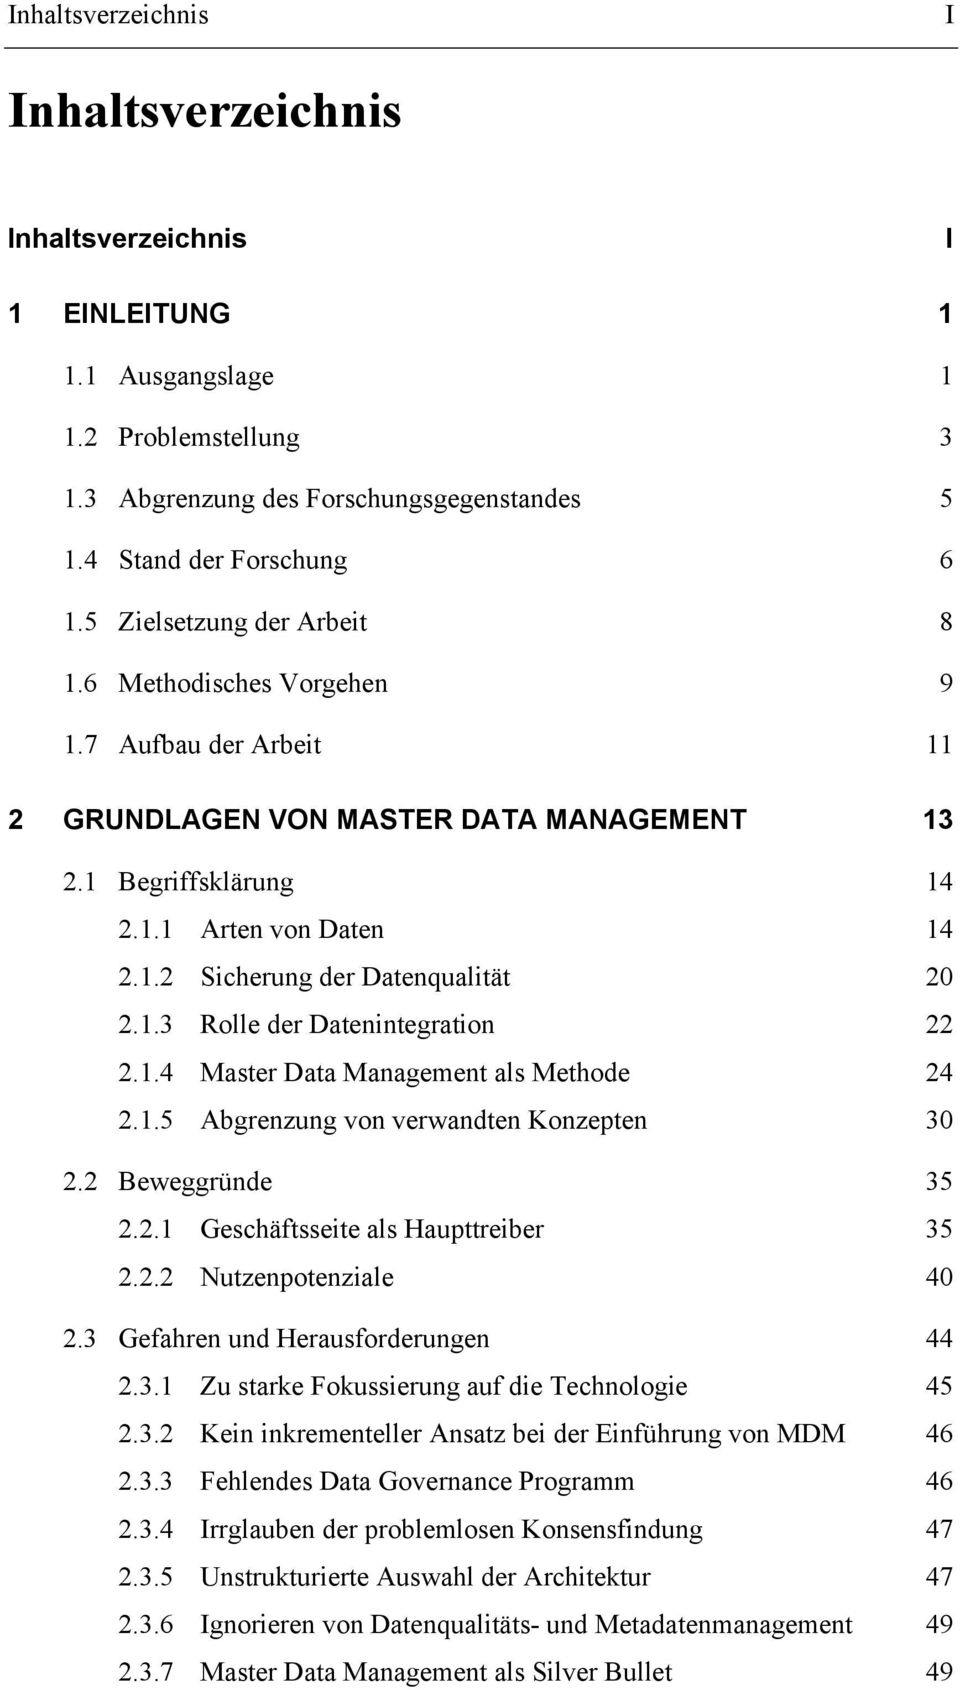 1.3 Rolle der Datenintegration 22 2.1.4 Master Data Management als Methode 24 2.1.5 Abgrenzung von verwandten Konzepten 30 2.2 Beweggründe 35 2.2.1 Geschäftsseite als Haupttreiber 35 2.2.2 Nutzenpotenziale 40 2.